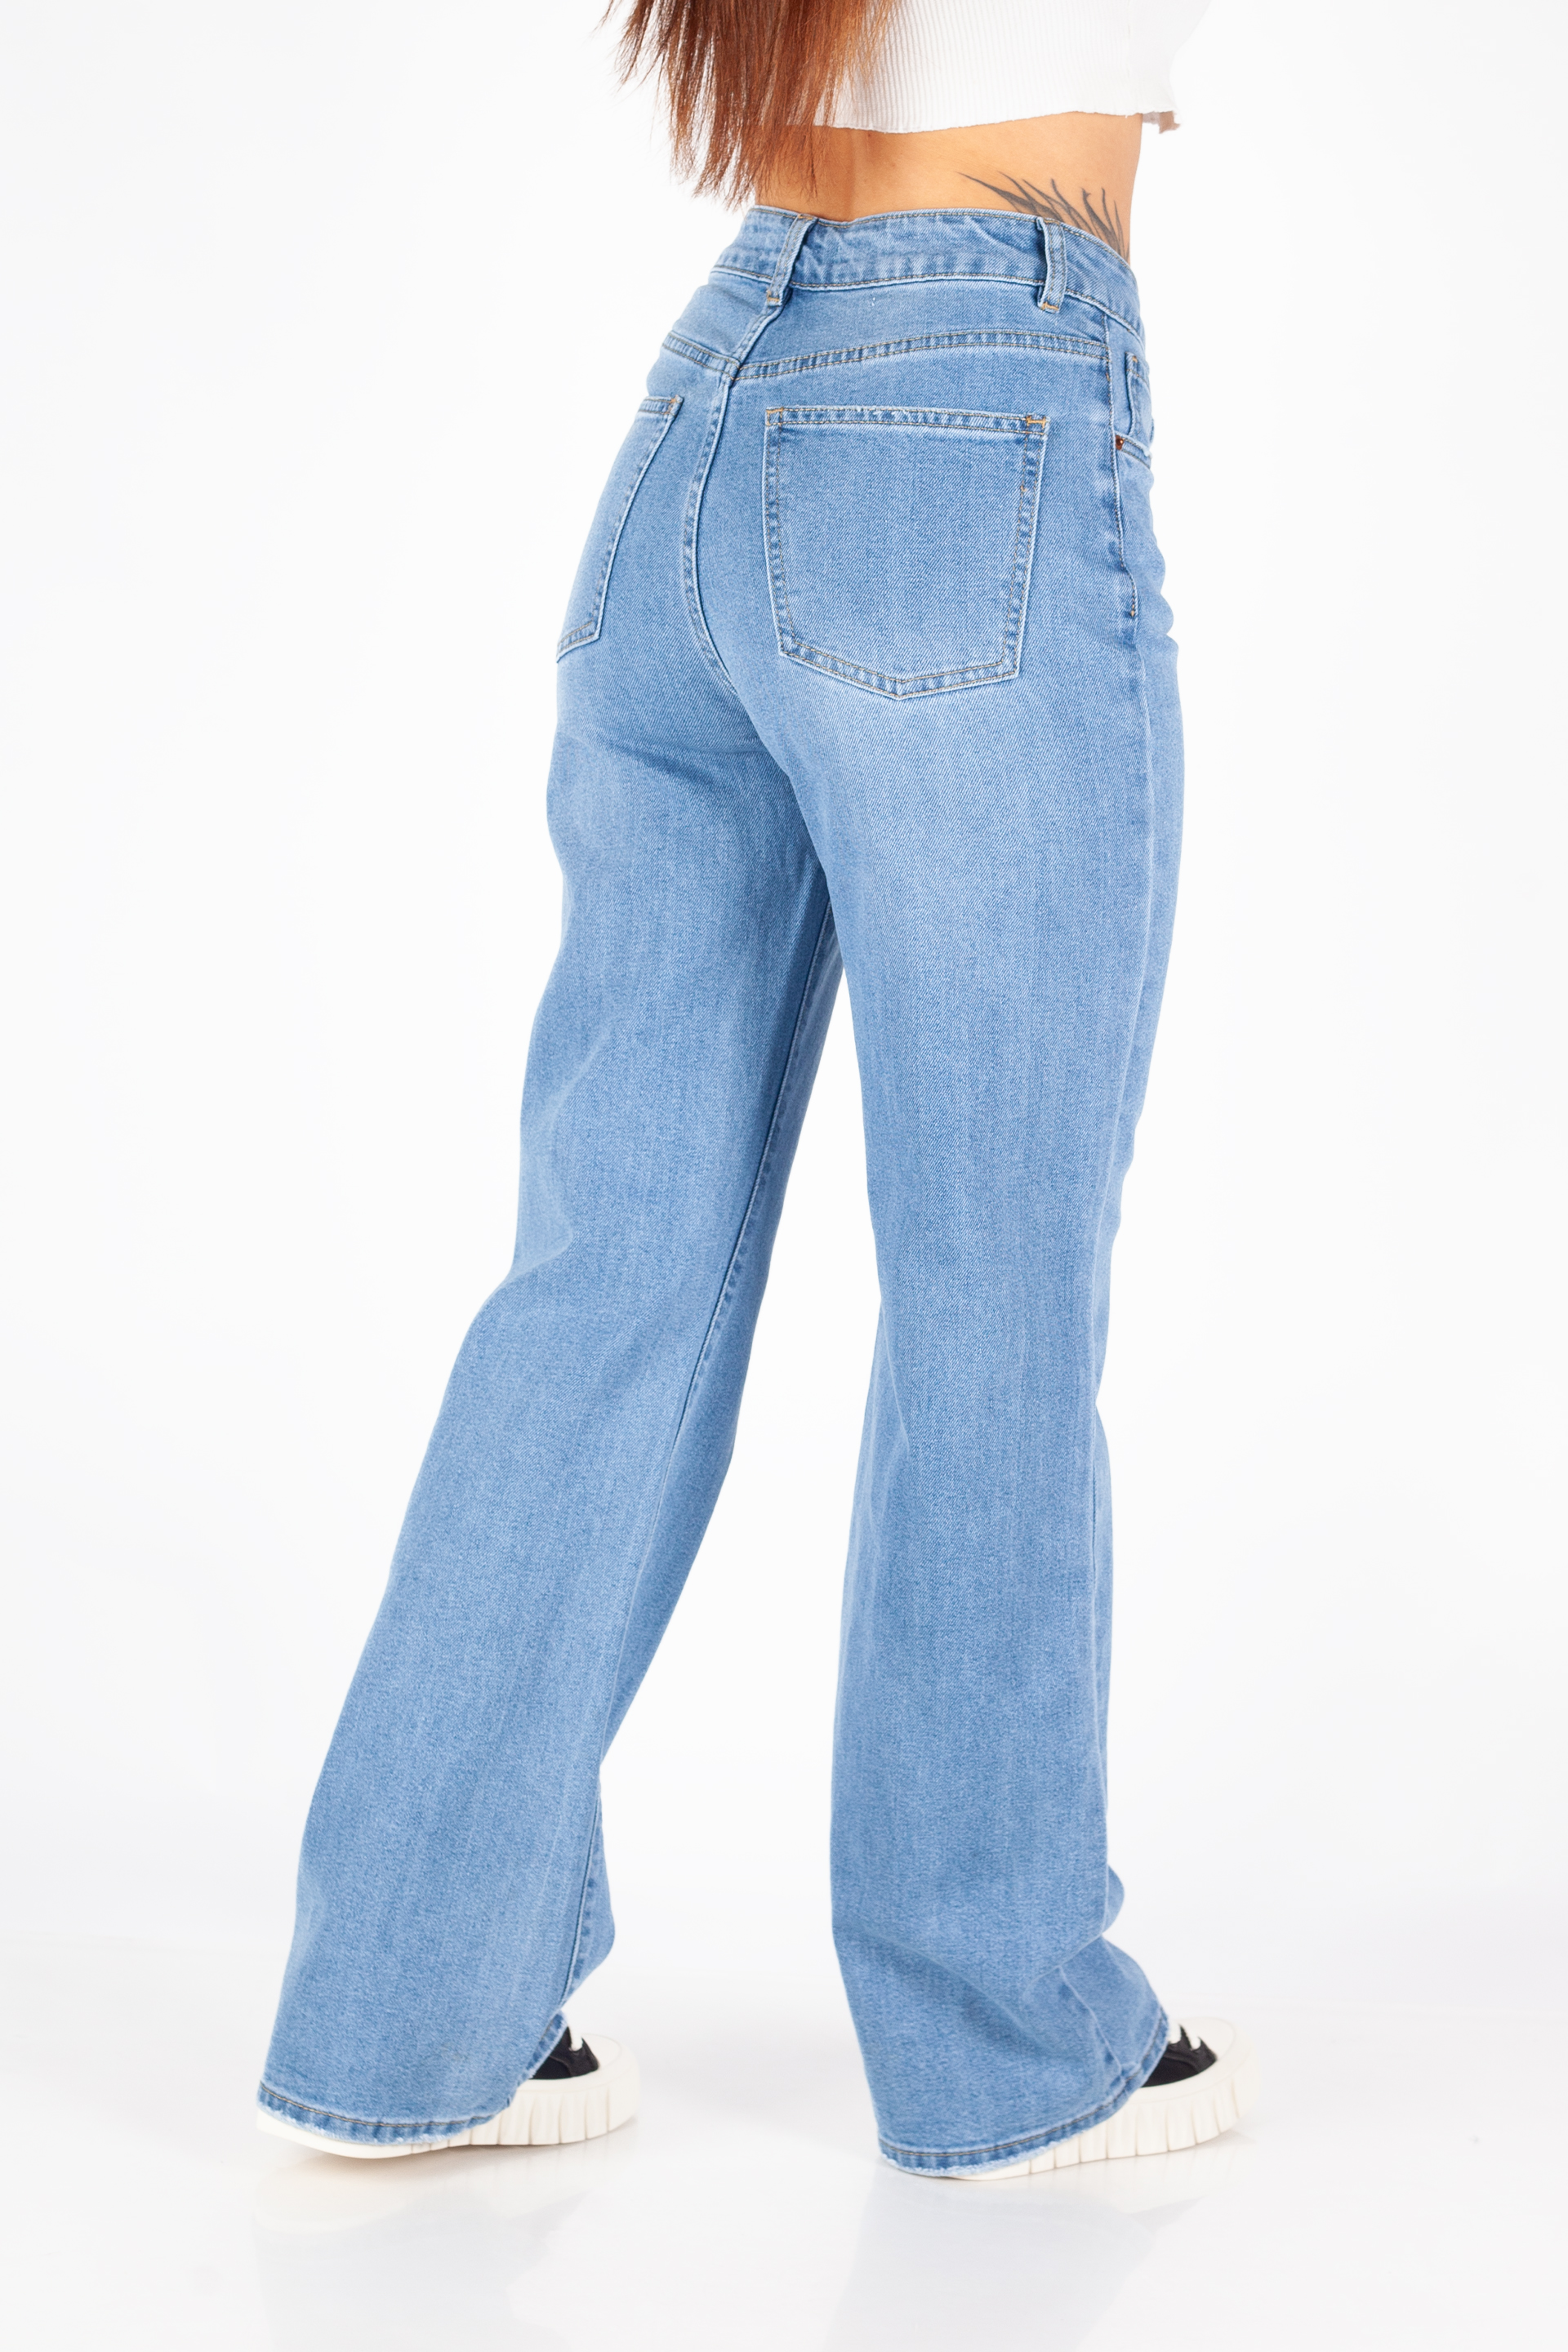 Jeans VS MISS VS8198